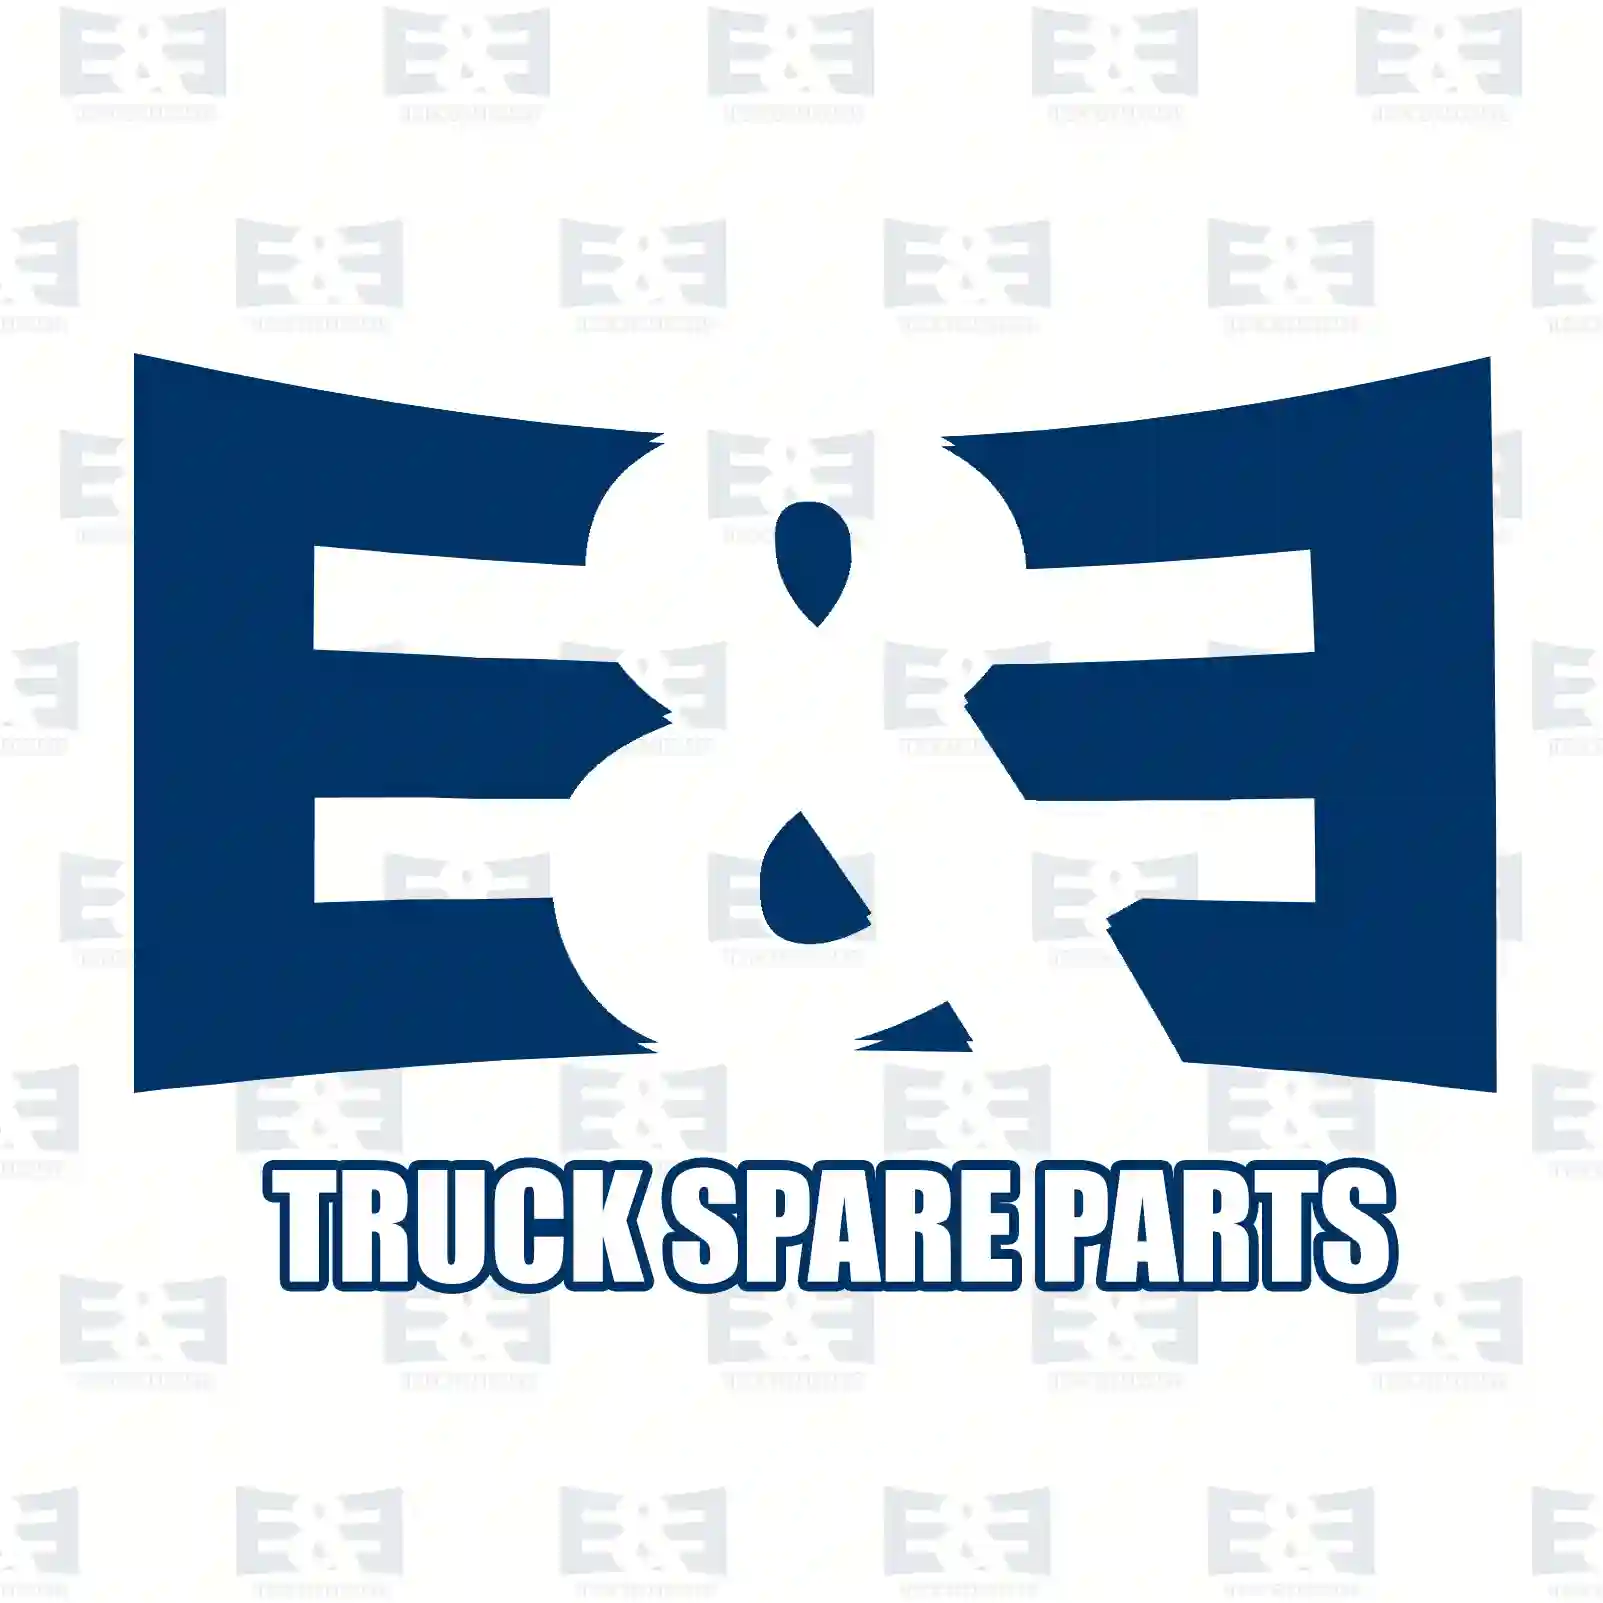 Push-in-connector, 2E2296861, 6718125307 ||  2E2296861 E&E Truck Spare Parts | Truck Spare Parts, Auotomotive Spare Parts Push-in-connector, 2E2296861, 6718125307 ||  2E2296861 E&E Truck Spare Parts | Truck Spare Parts, Auotomotive Spare Parts